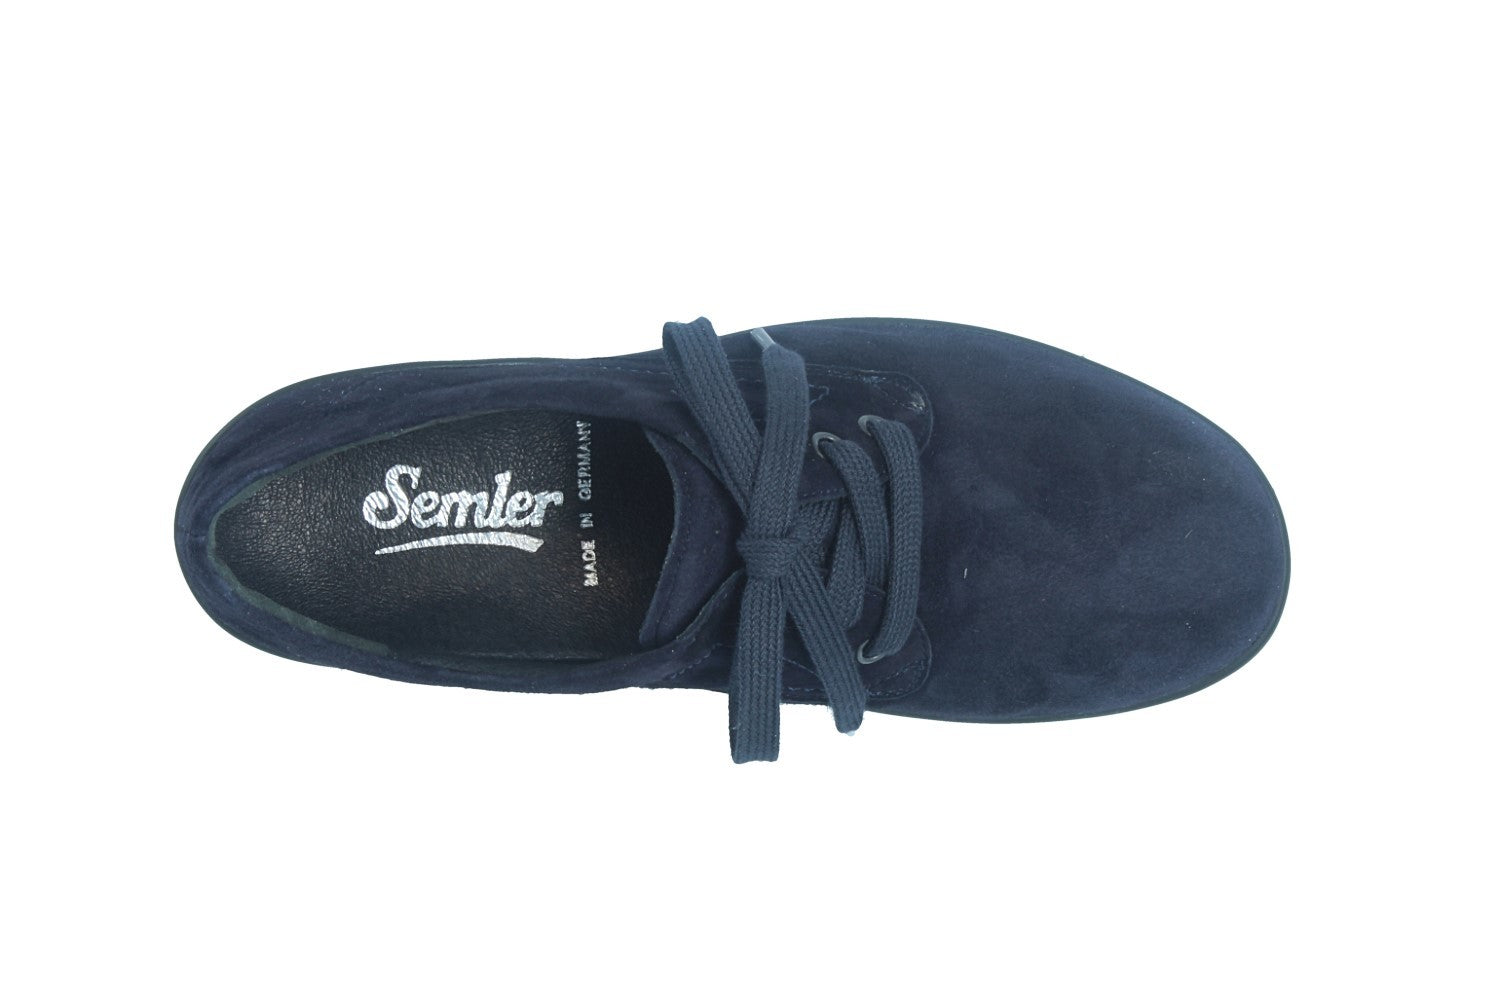 Xenia – bleu nuit – chaussure à lacets